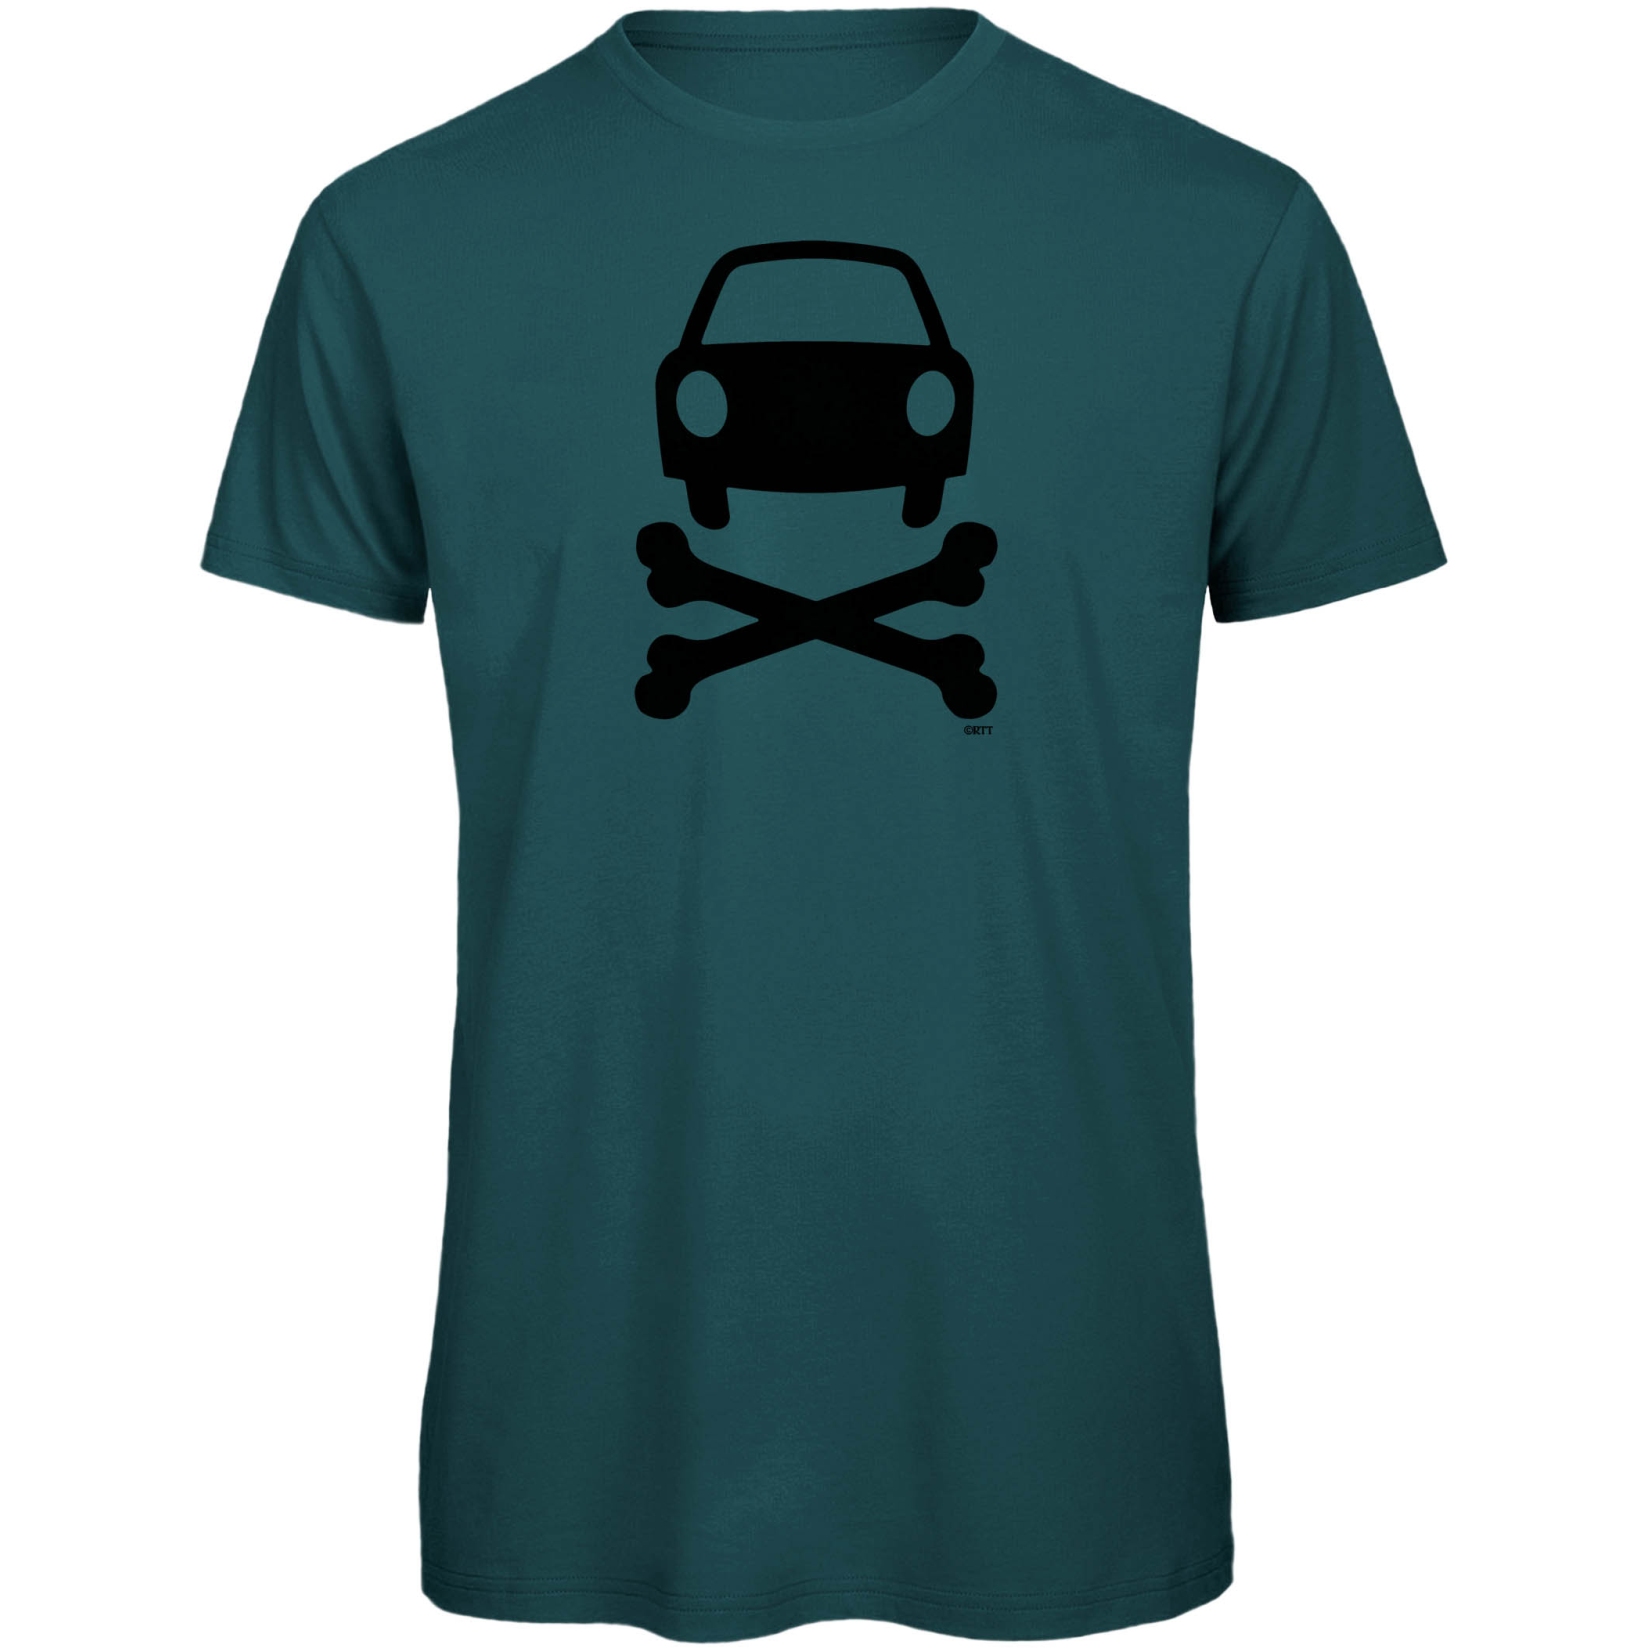 Produktbild von RTTshirts Fahrrad T-Shirt No Car - blau